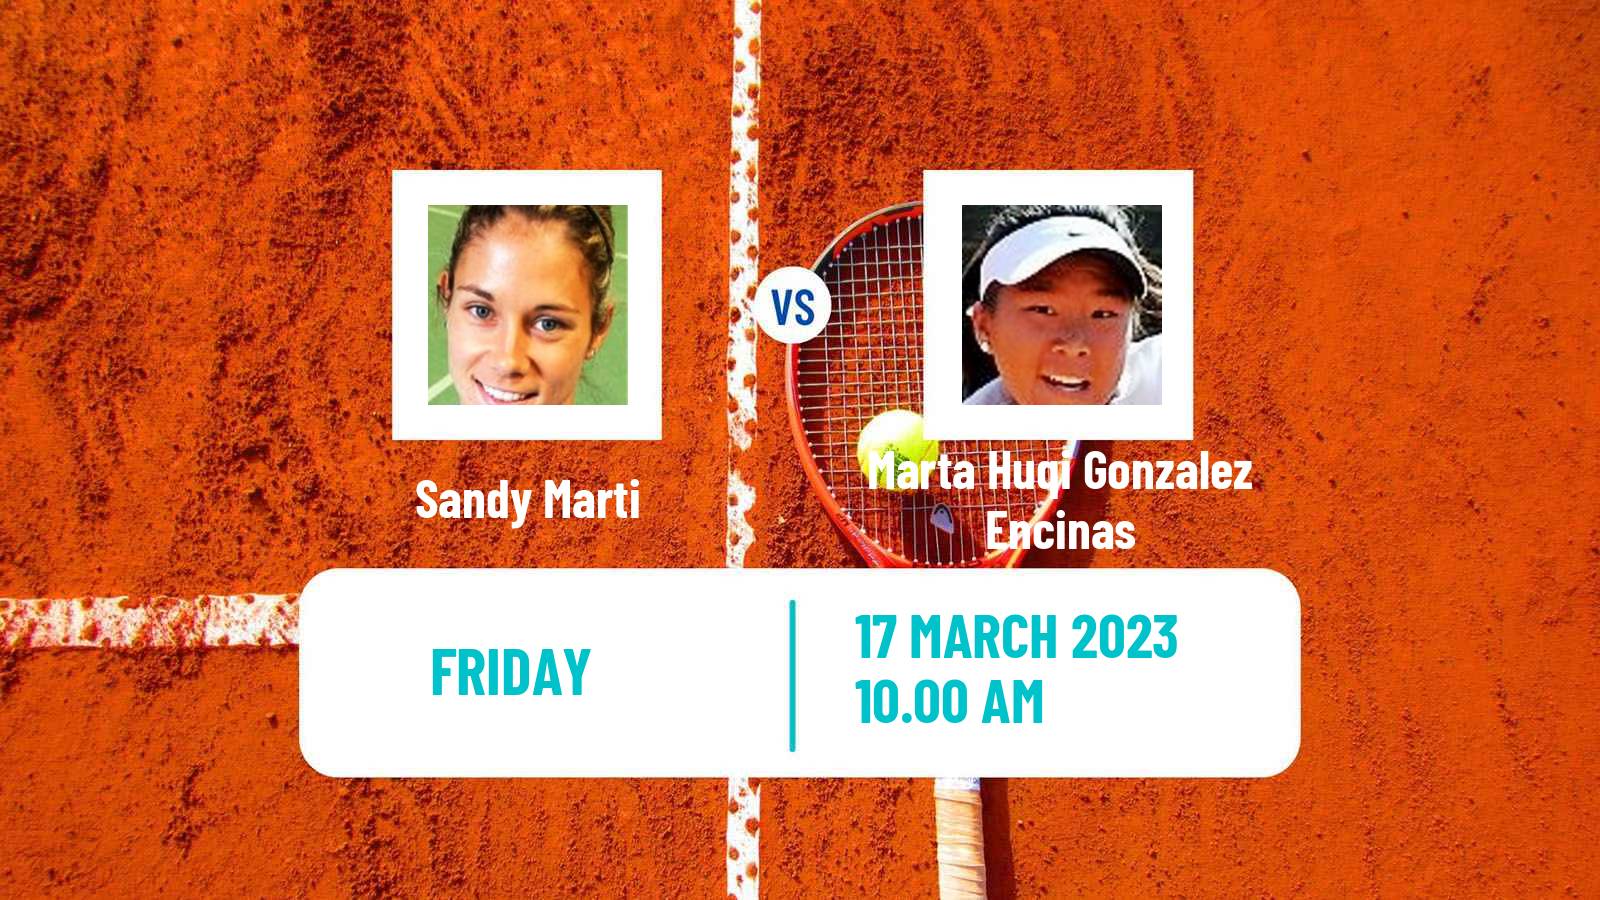 Tennis ITF Tournaments Sandy Marti - Marta Huqi Gonzalez Encinas